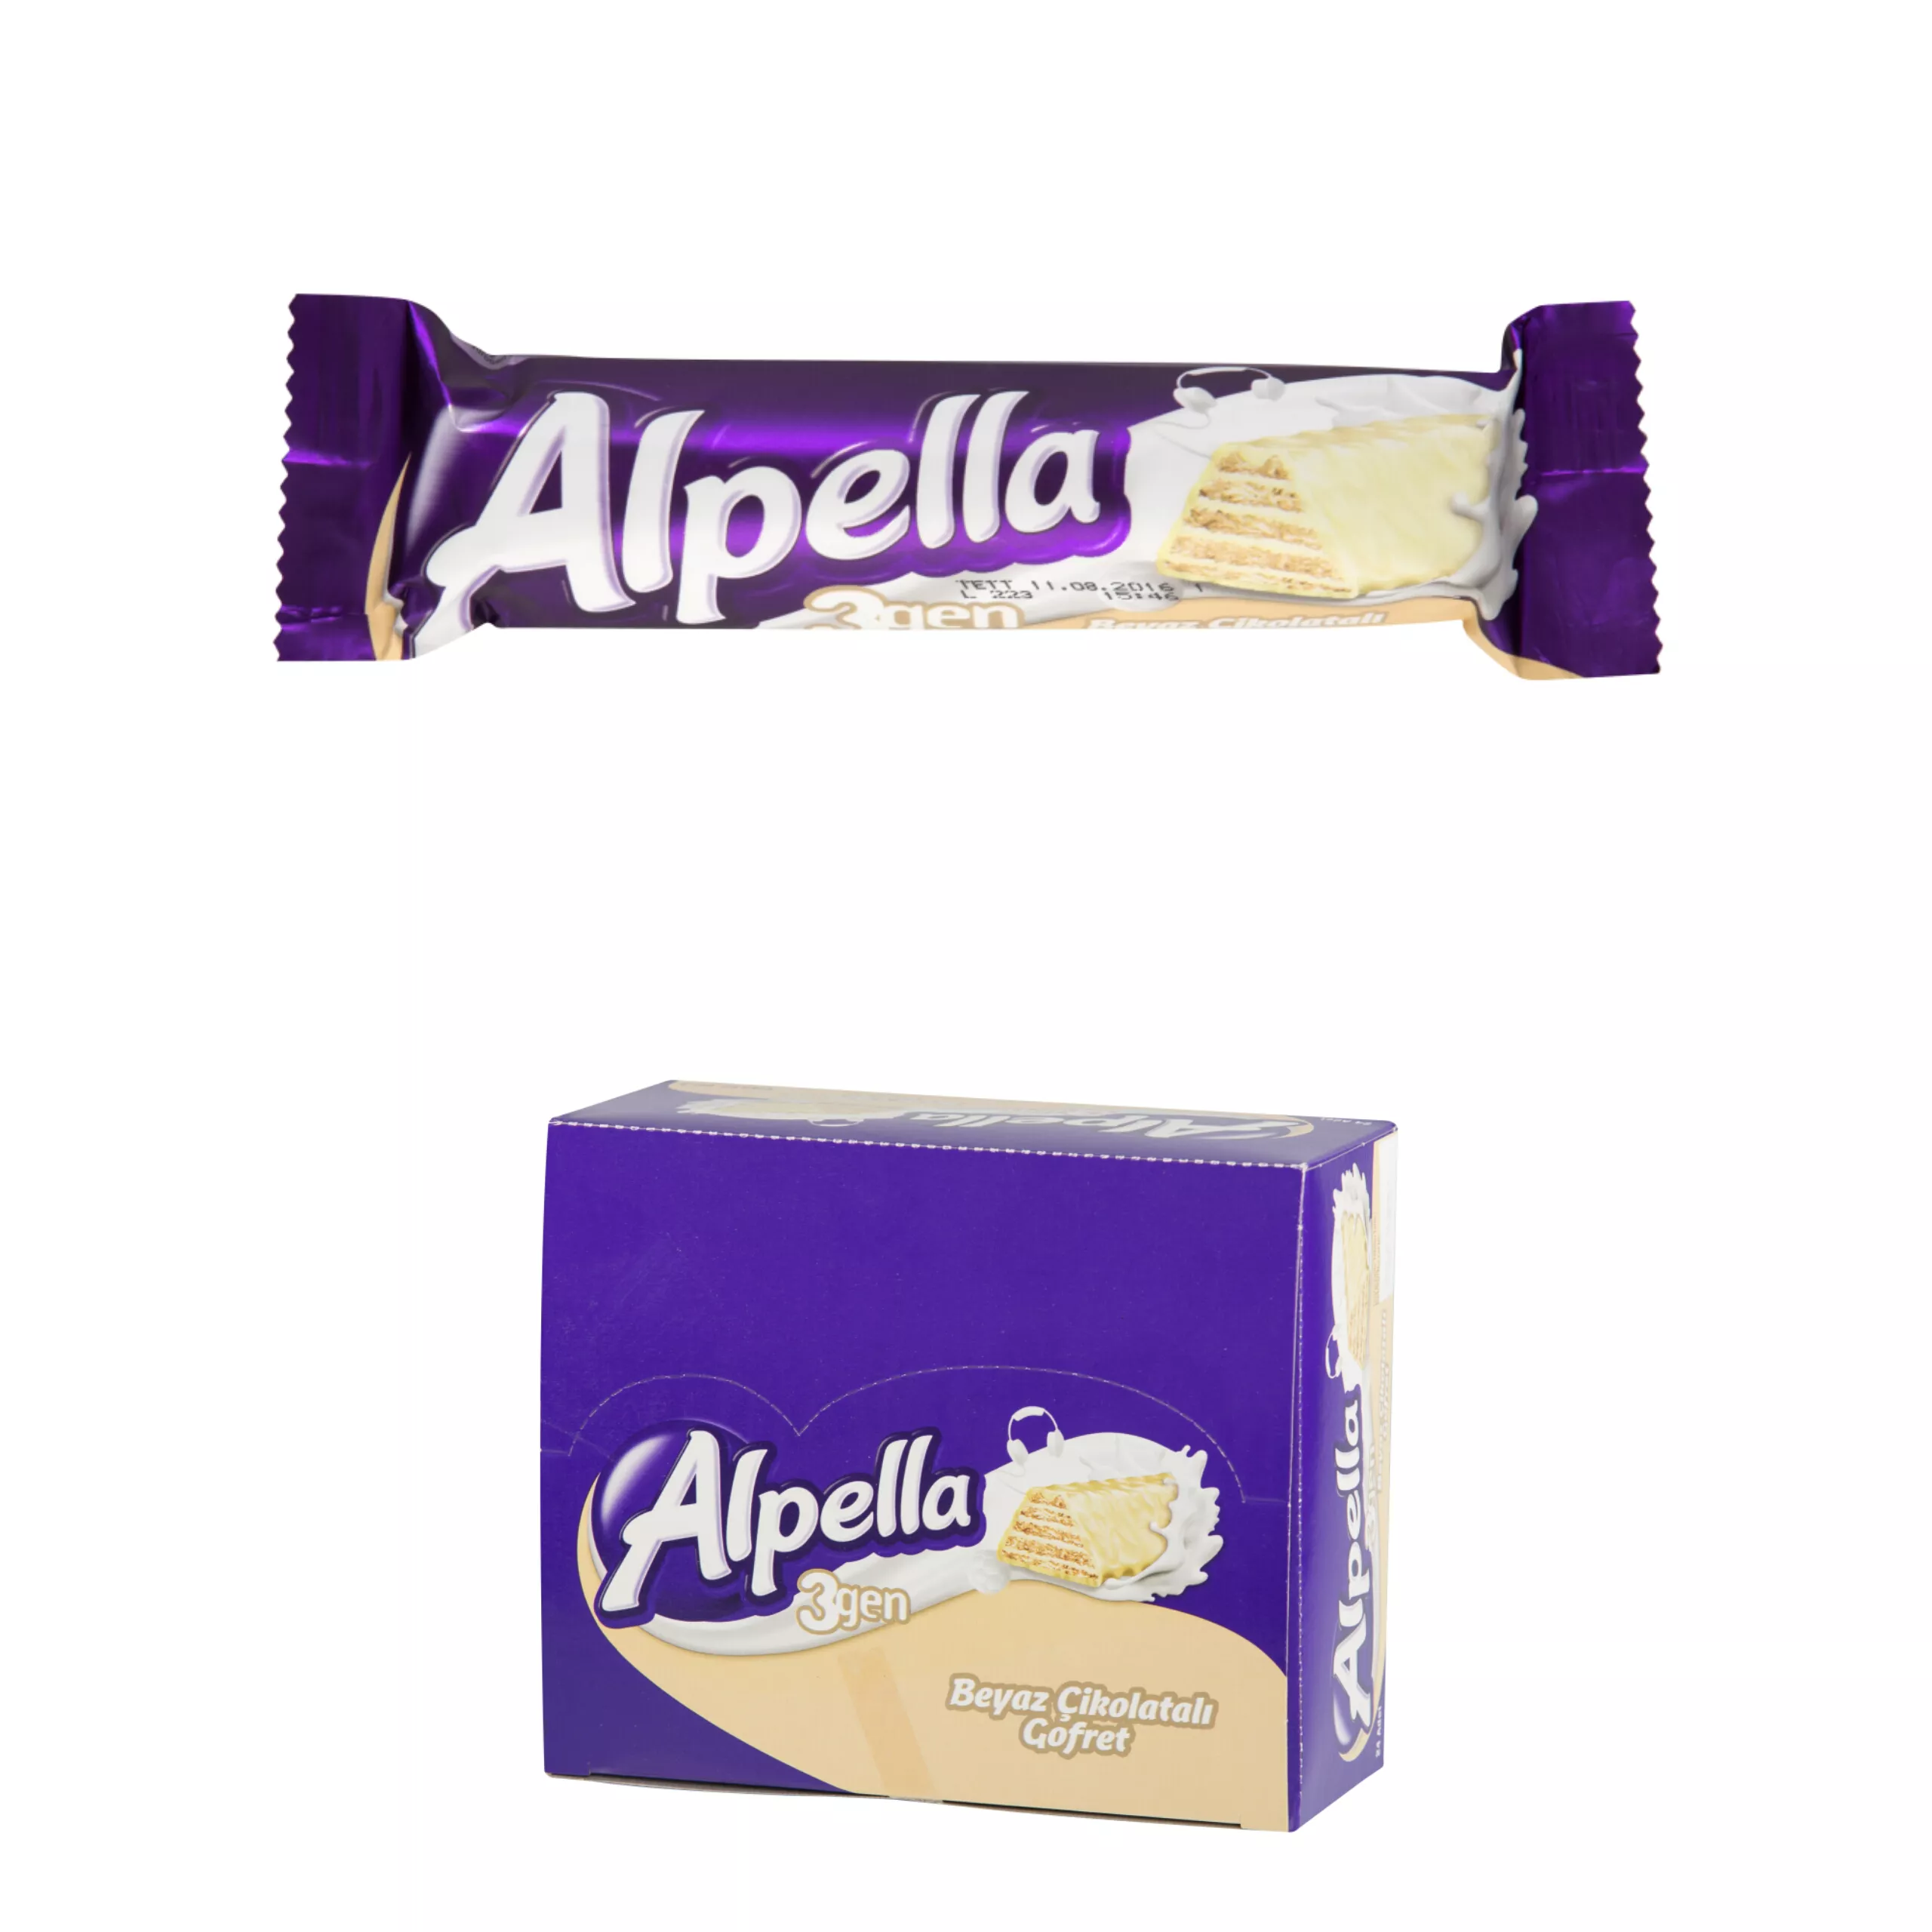 Alpella 3 Gen Beyaz Çikolatalı Gofret 28 gr